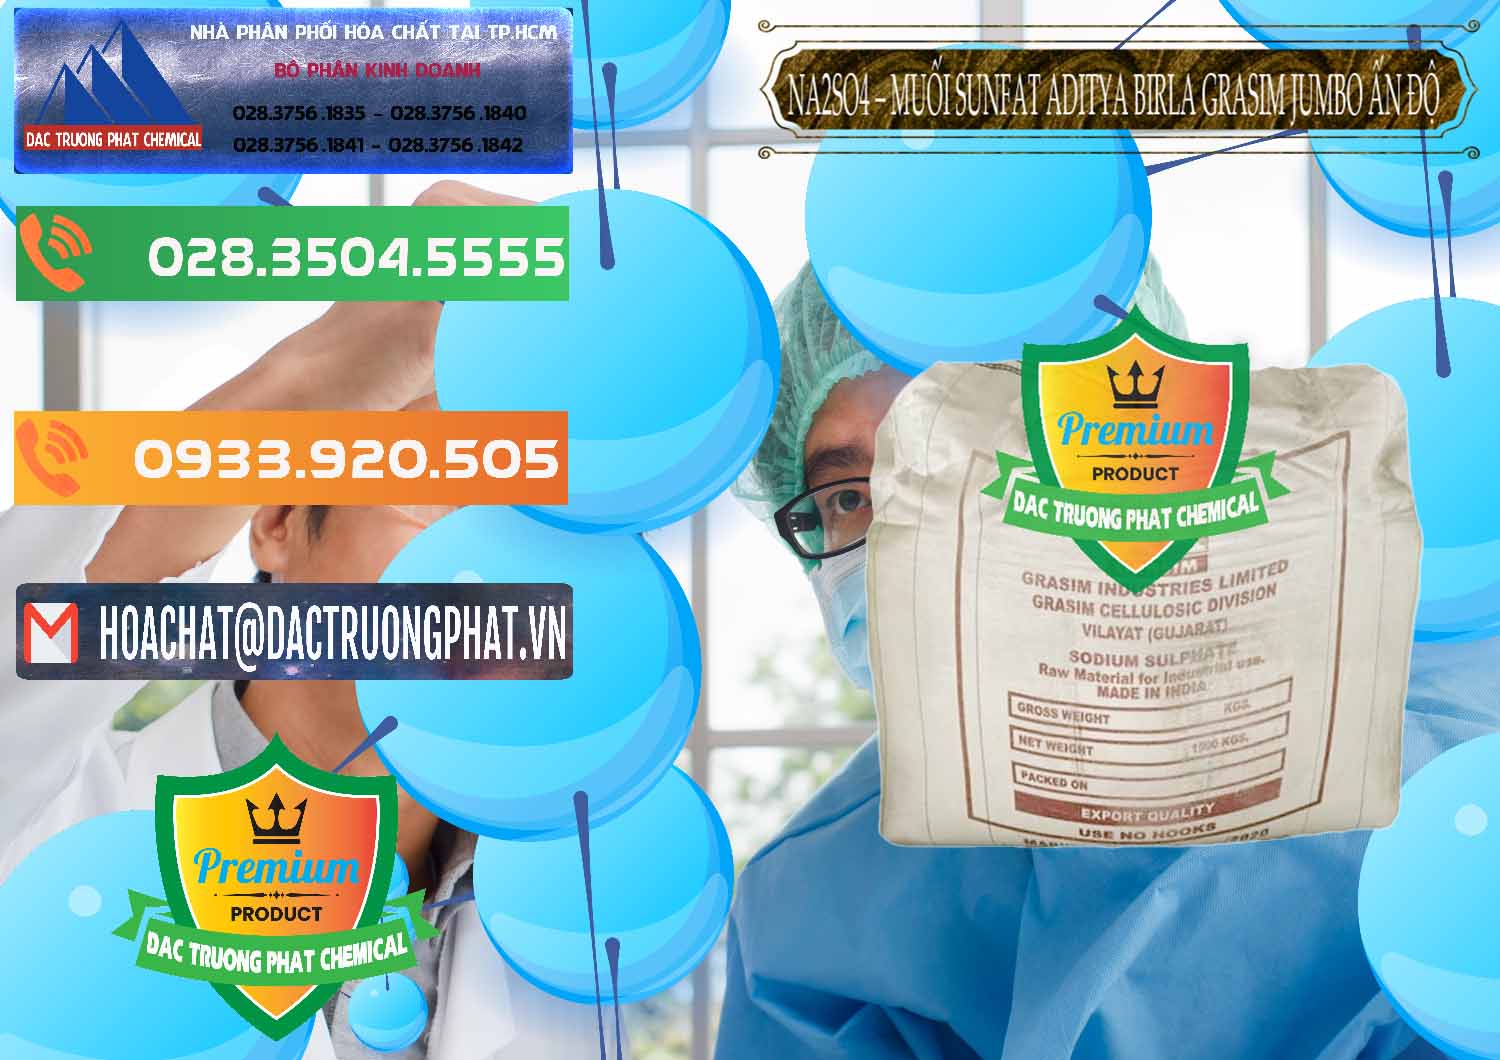 Cty chuyên cung ứng _ bán Sodium Sulphate - Muối Sunfat Na2SO4 Jumbo Bành Aditya Birla Grasim Ấn Độ India - 0357 - Công ty bán - phân phối hóa chất tại TP.HCM - hoachatxulynuoc.com.vn